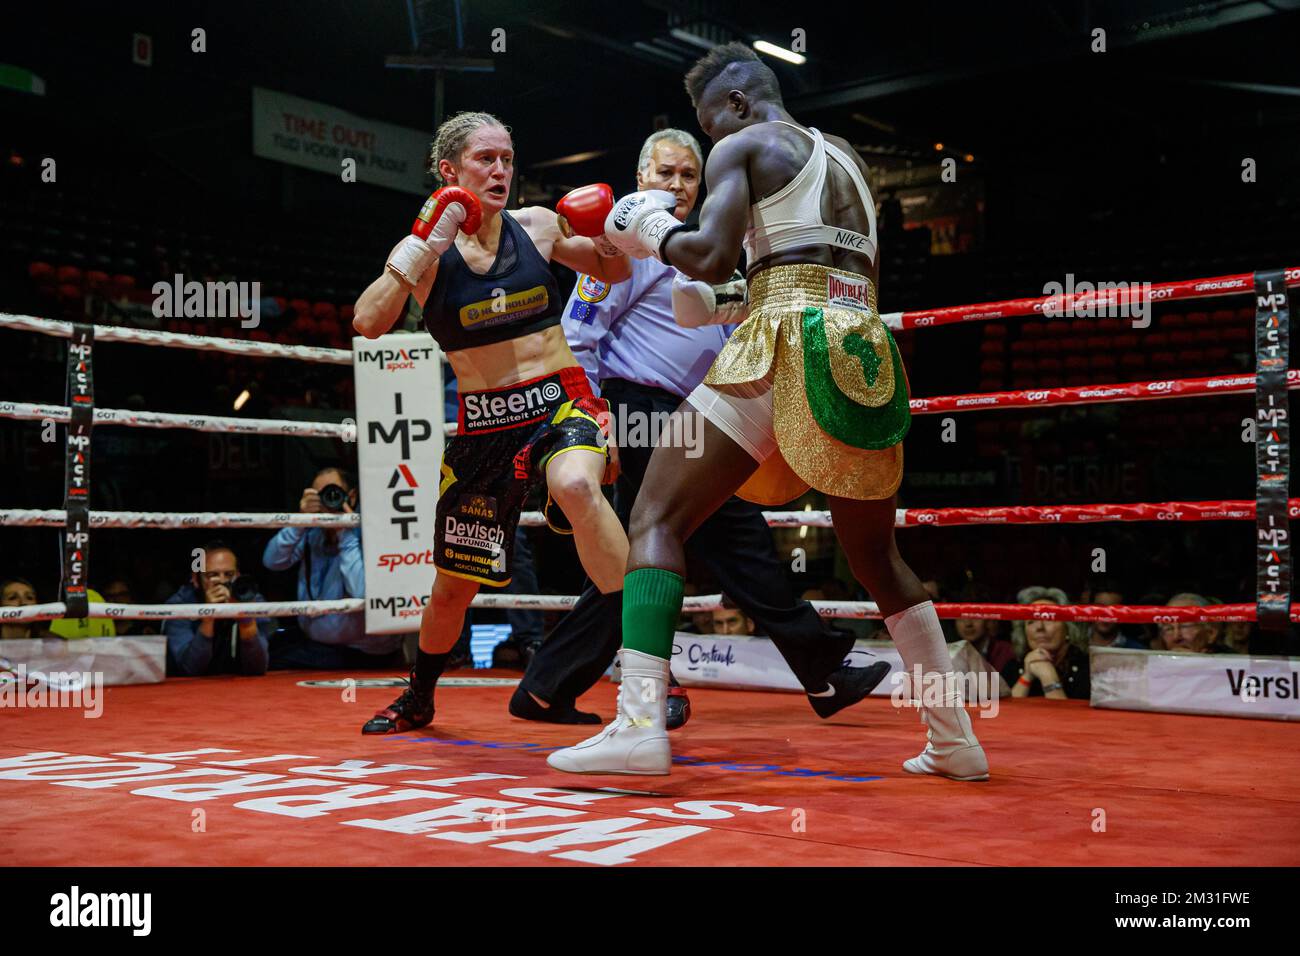 L'illustration montre la lutte entre le persoon Delfine belge et Helen Joseph nigériane pour le titre de poids plume féminin WBA World, lundi 11 novembre 2019, à Ostende. BELGA PHOTO KURT DESPLENTER Banque D'Images